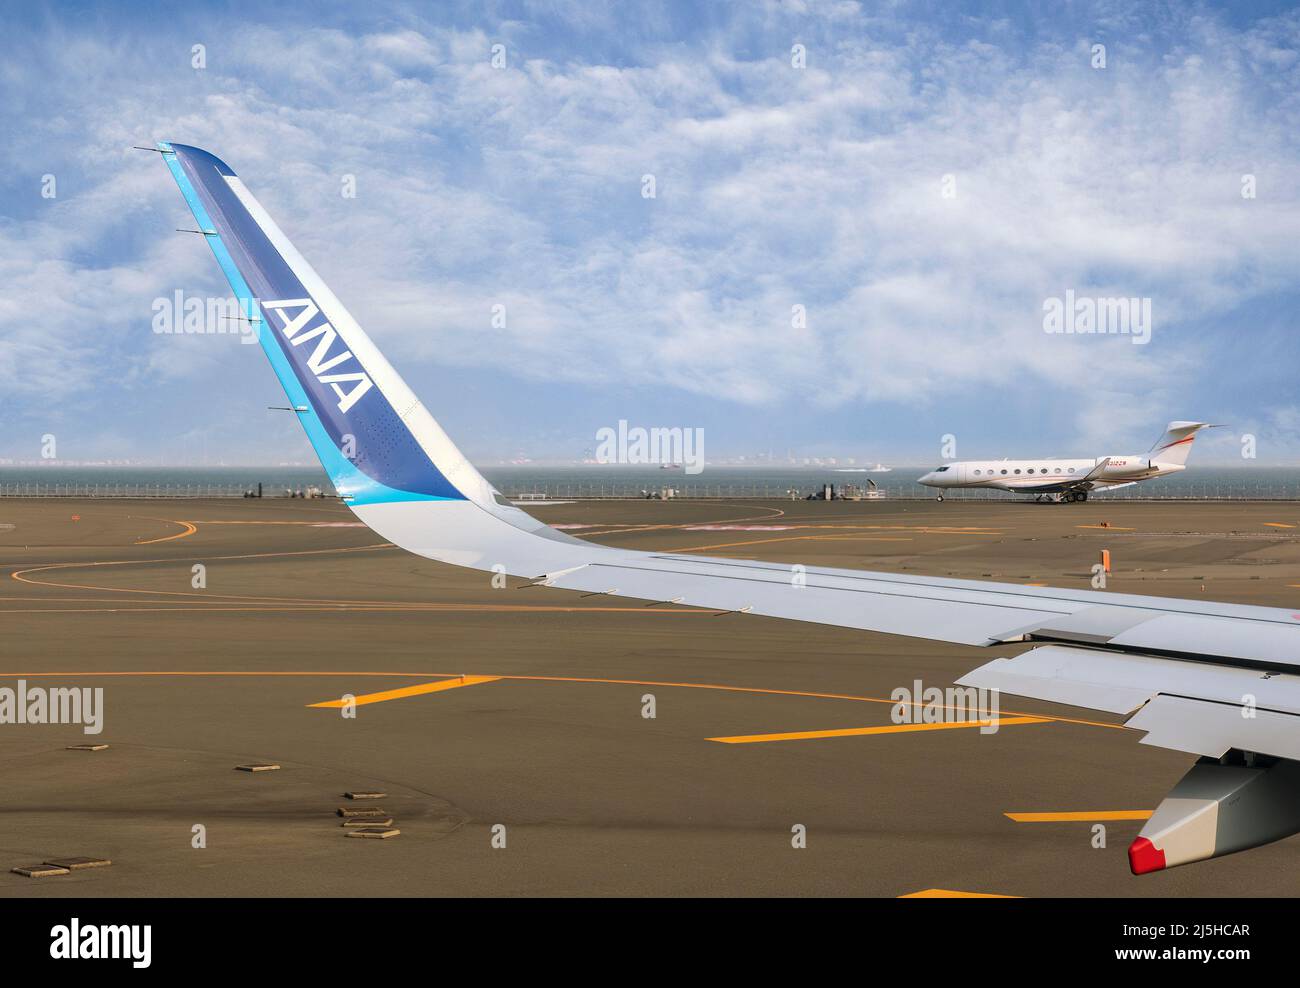 ANA airline logo and aircraft at Tokyo airport, Japan Stock Photo